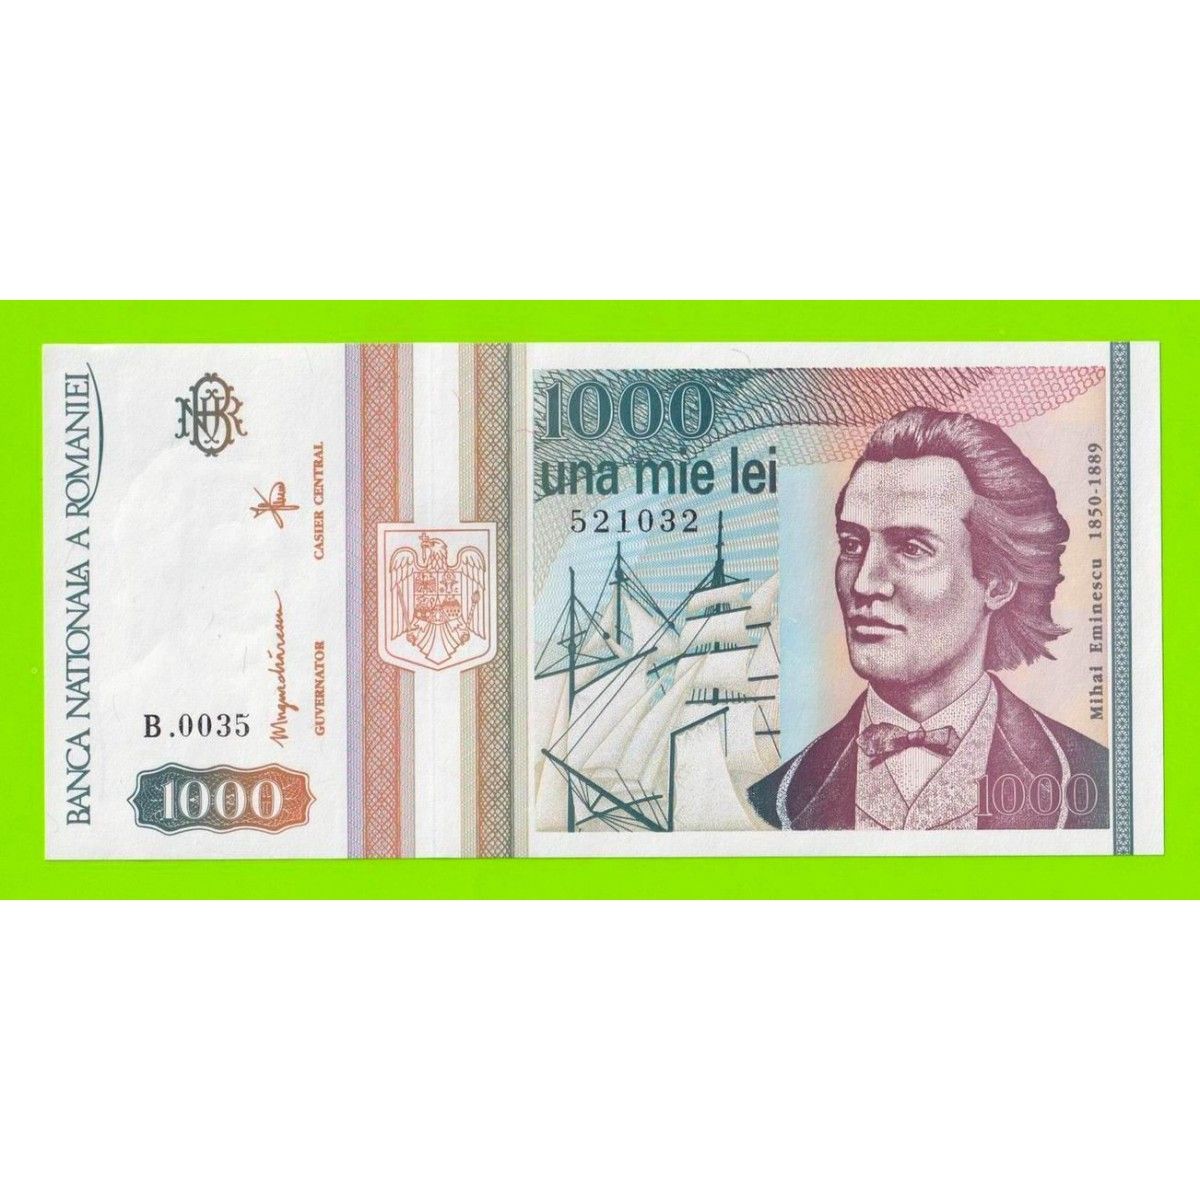 300 лей в рублях. Банкнота Румыния 1000. Купюра 1000 лей. 1000 Румынских лей. 20 Лева Болгария банкнота 1991.